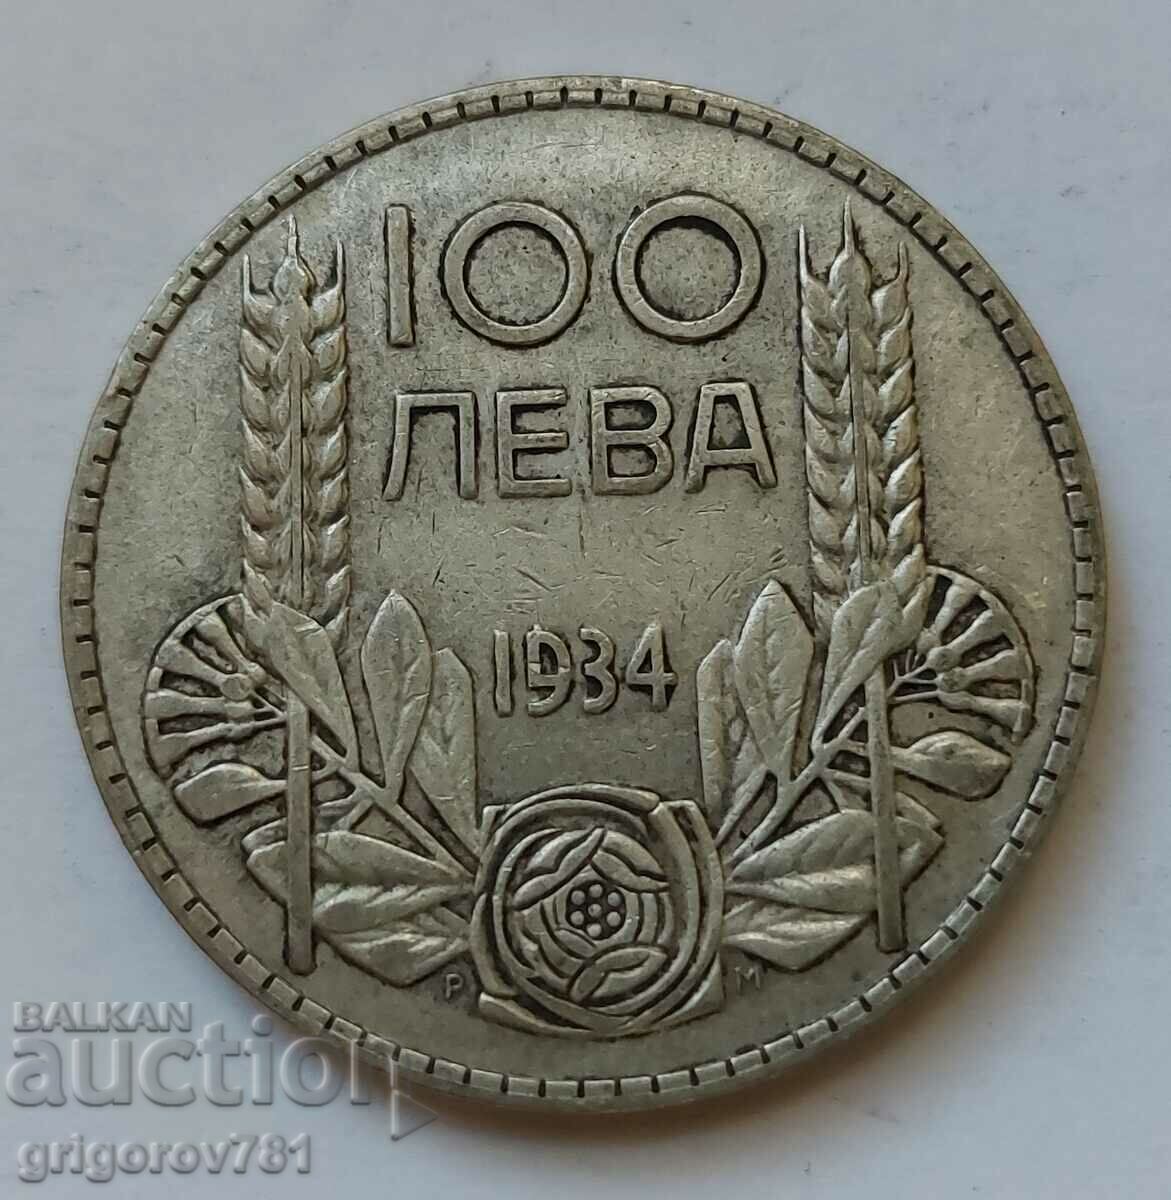 Ασήμι 100 λέβα Βουλγαρία 1934 - ασημένιο νόμισμα #127